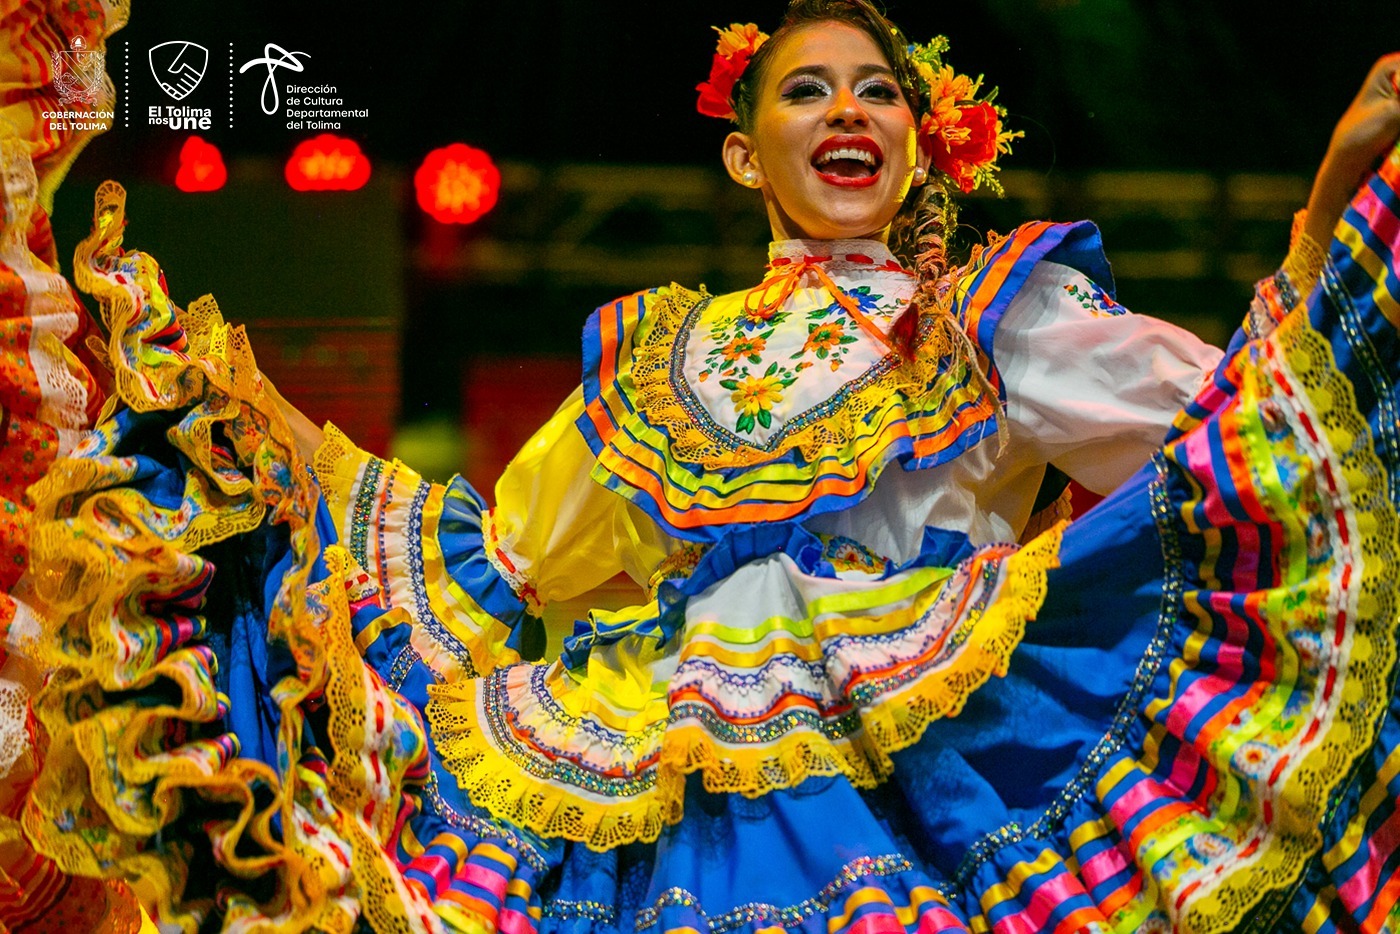 Fotos: Dirección de Cultura Tolima / EL NUEVO DÍA El Reinado Departamental del Folclor se realizará del 23 al 26 de junio de 2023 en Ibagué, en el marco del 49° Festival Folclórico Colombiano, Patrimonio Cultural y Artístico de la Nación.